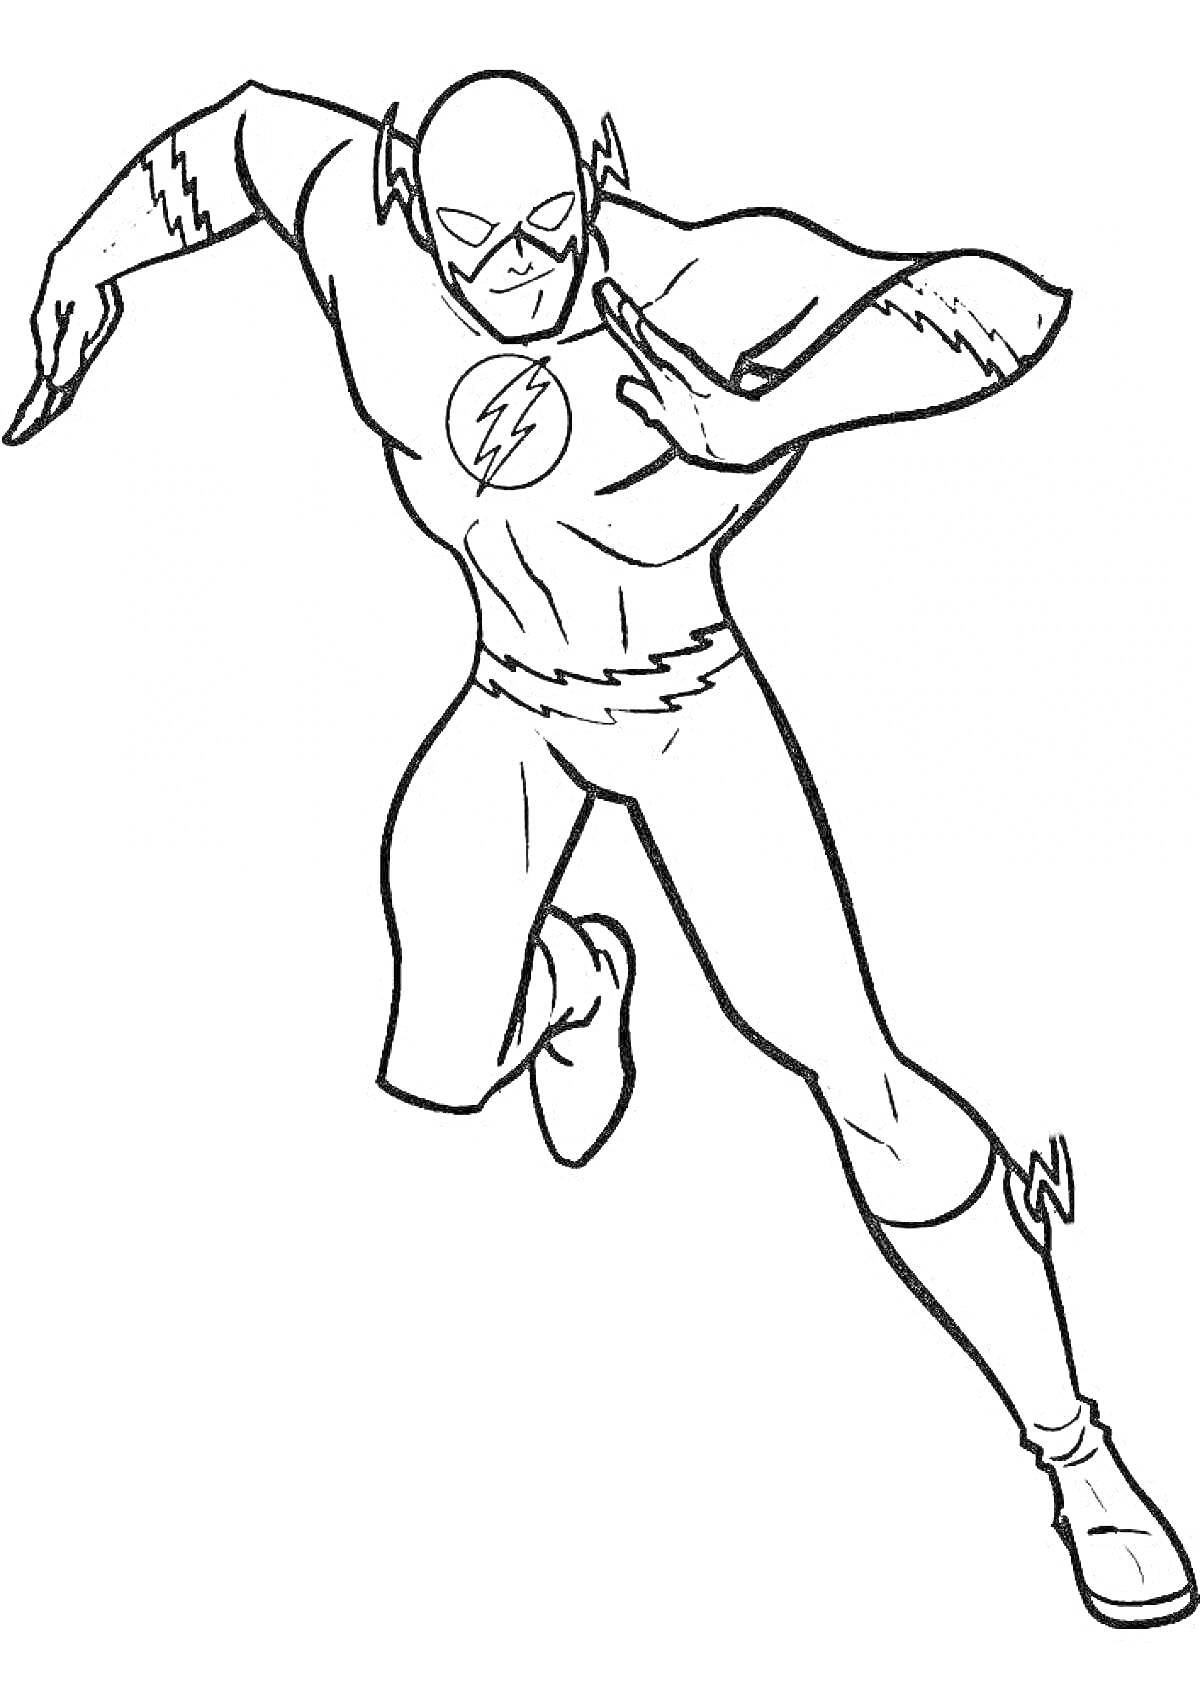 Раскраска Человек в костюме супергероя Флеша в движении, с молнией на груди и молниевыми деталями на костюме